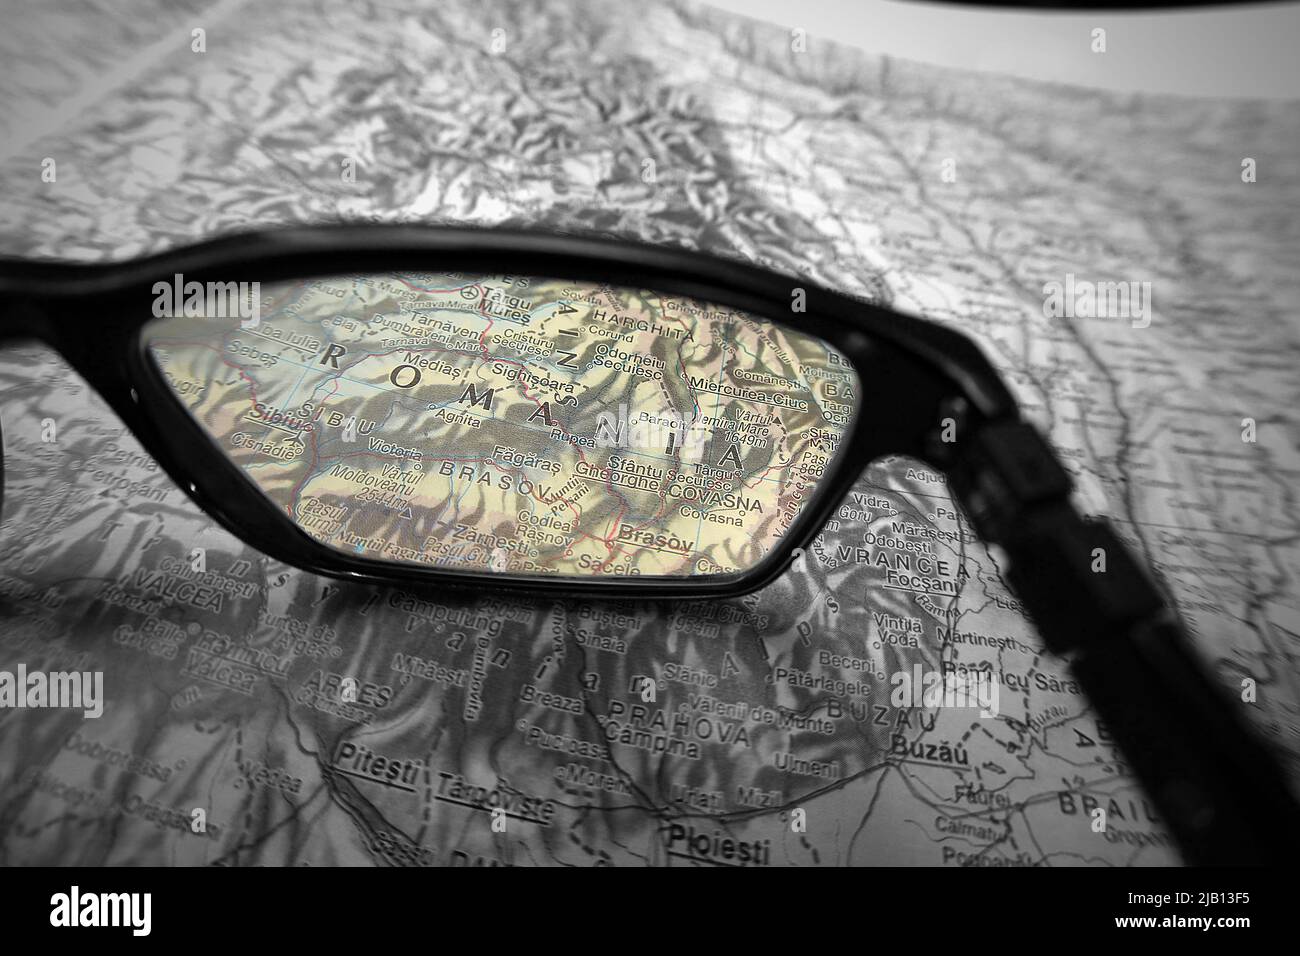 Una imagen ilustrativa creativa que muestra al país de Rumanía en un mapa a través de la lente de las gafas de lectura. El área alrededor de la palabra Rumanía en color Foto de stock